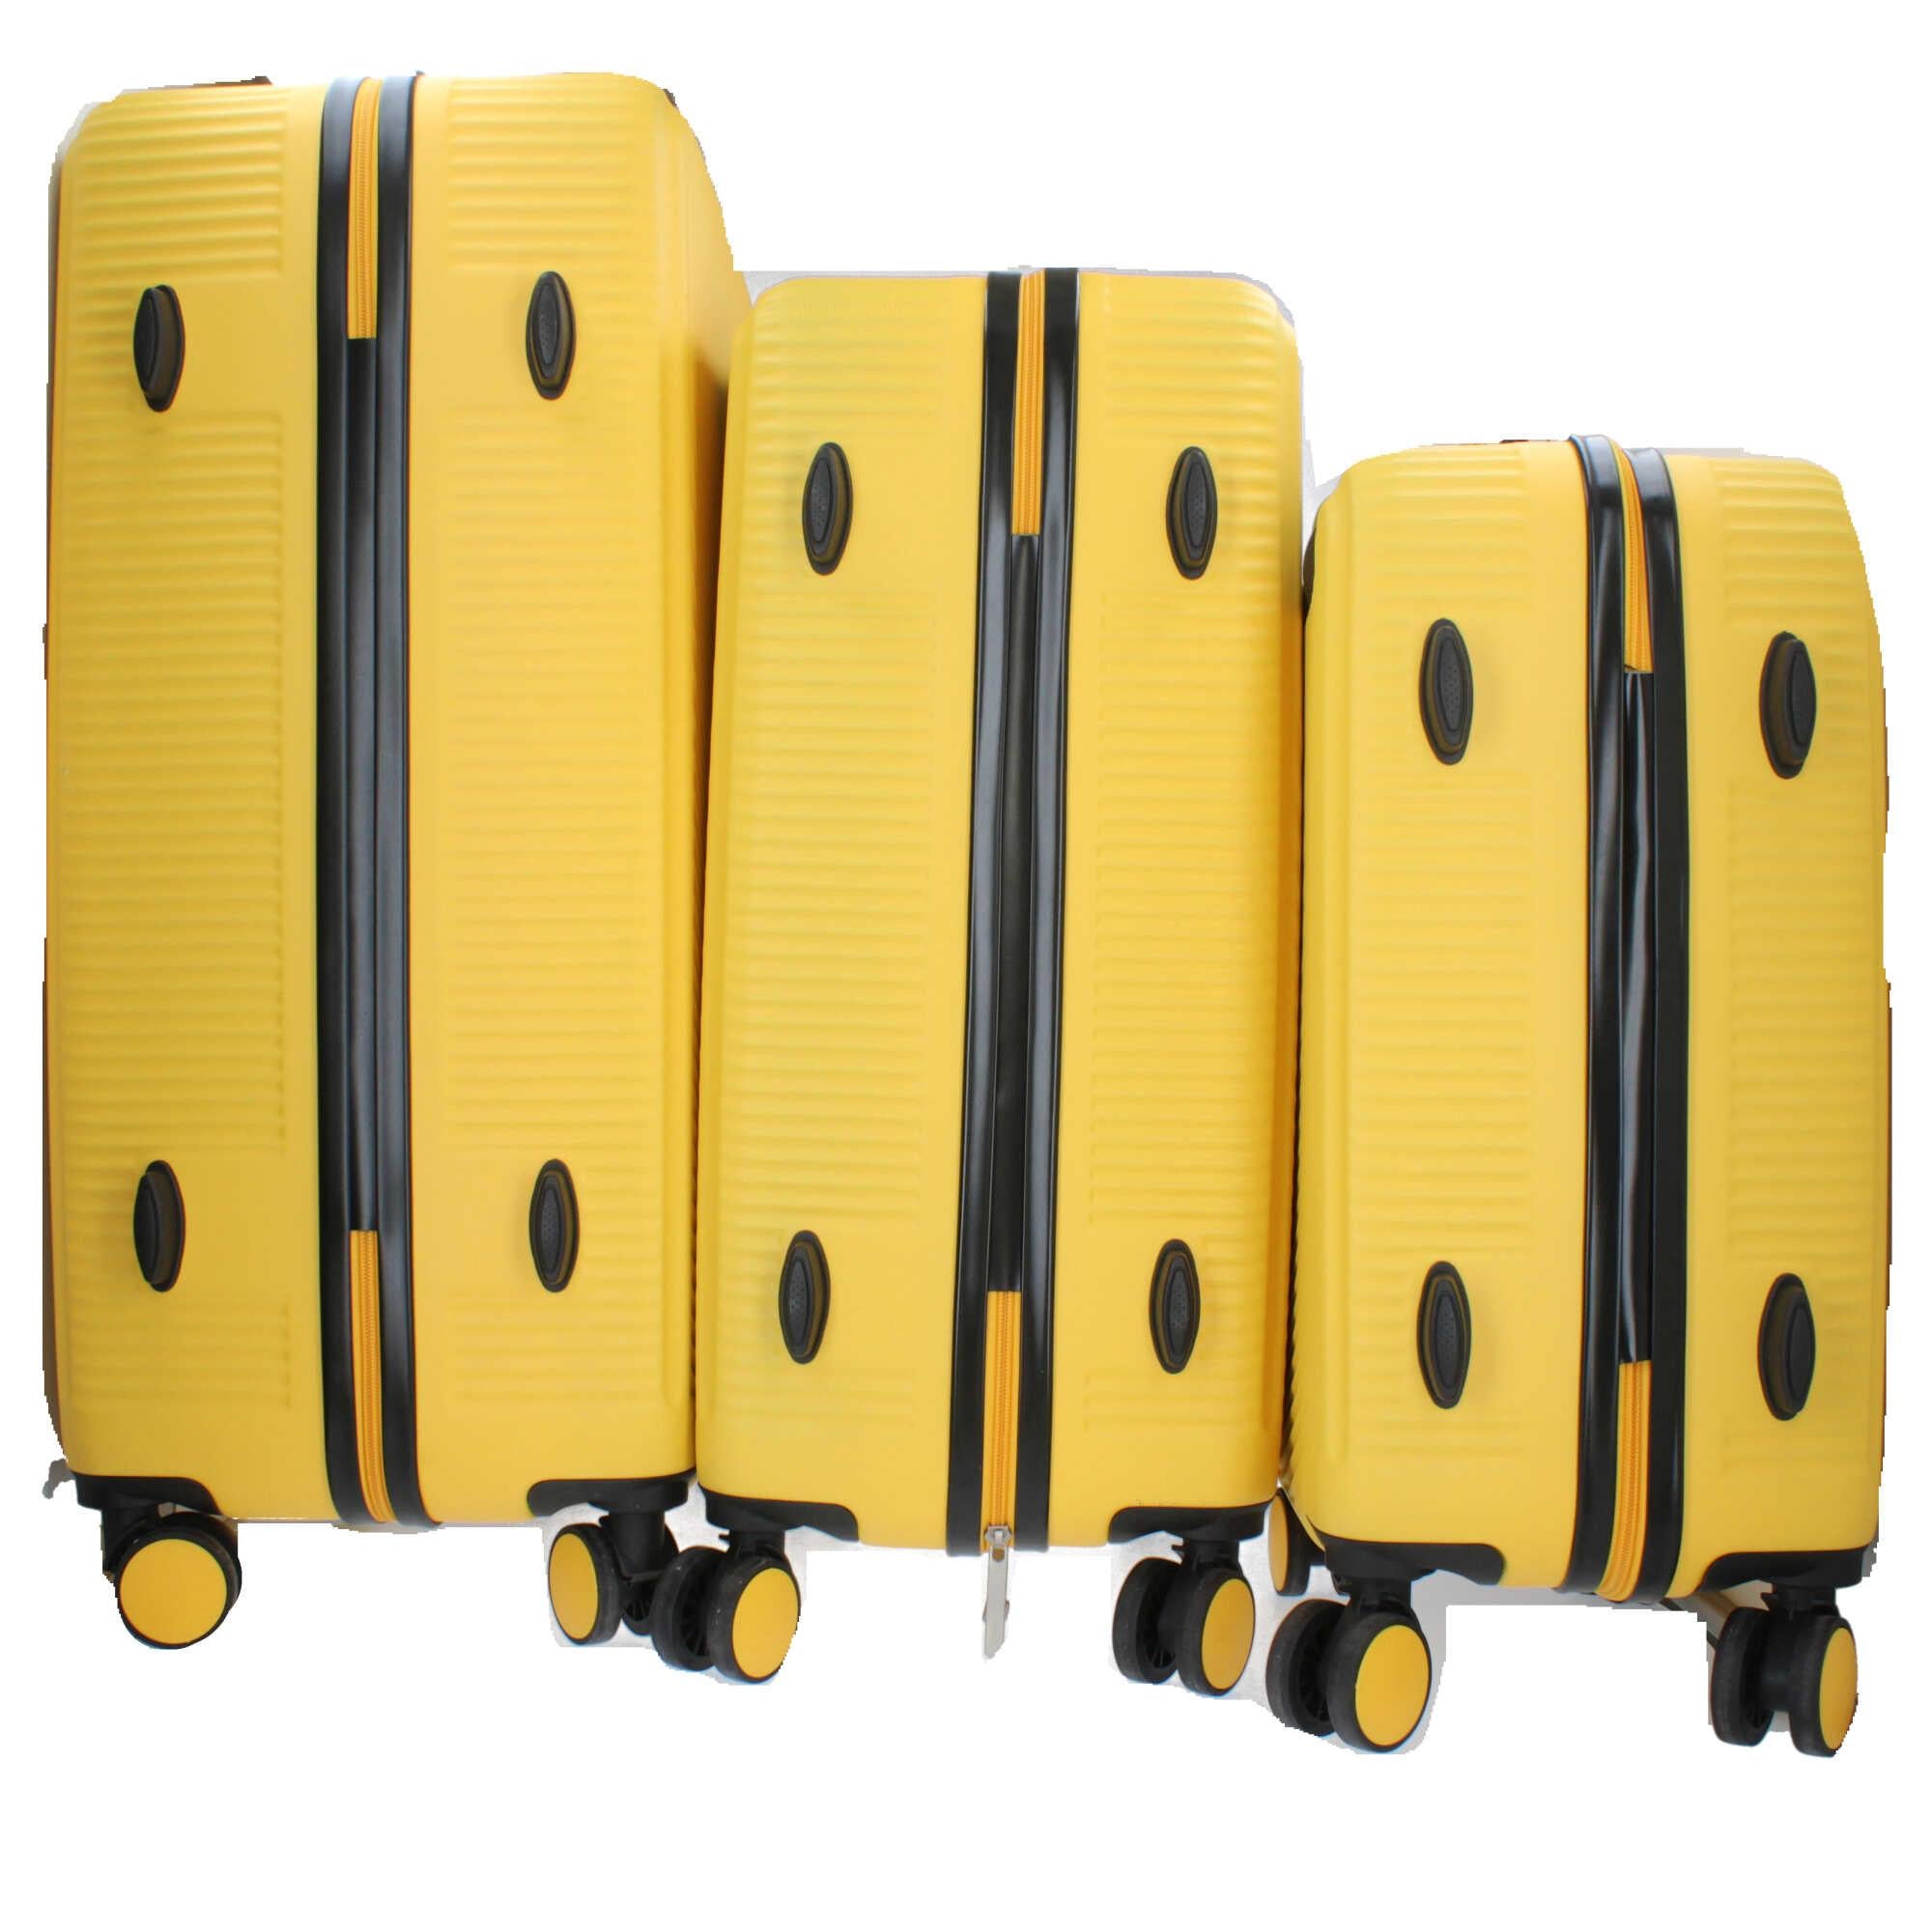 Promozione 3 set valigie con borsa mare